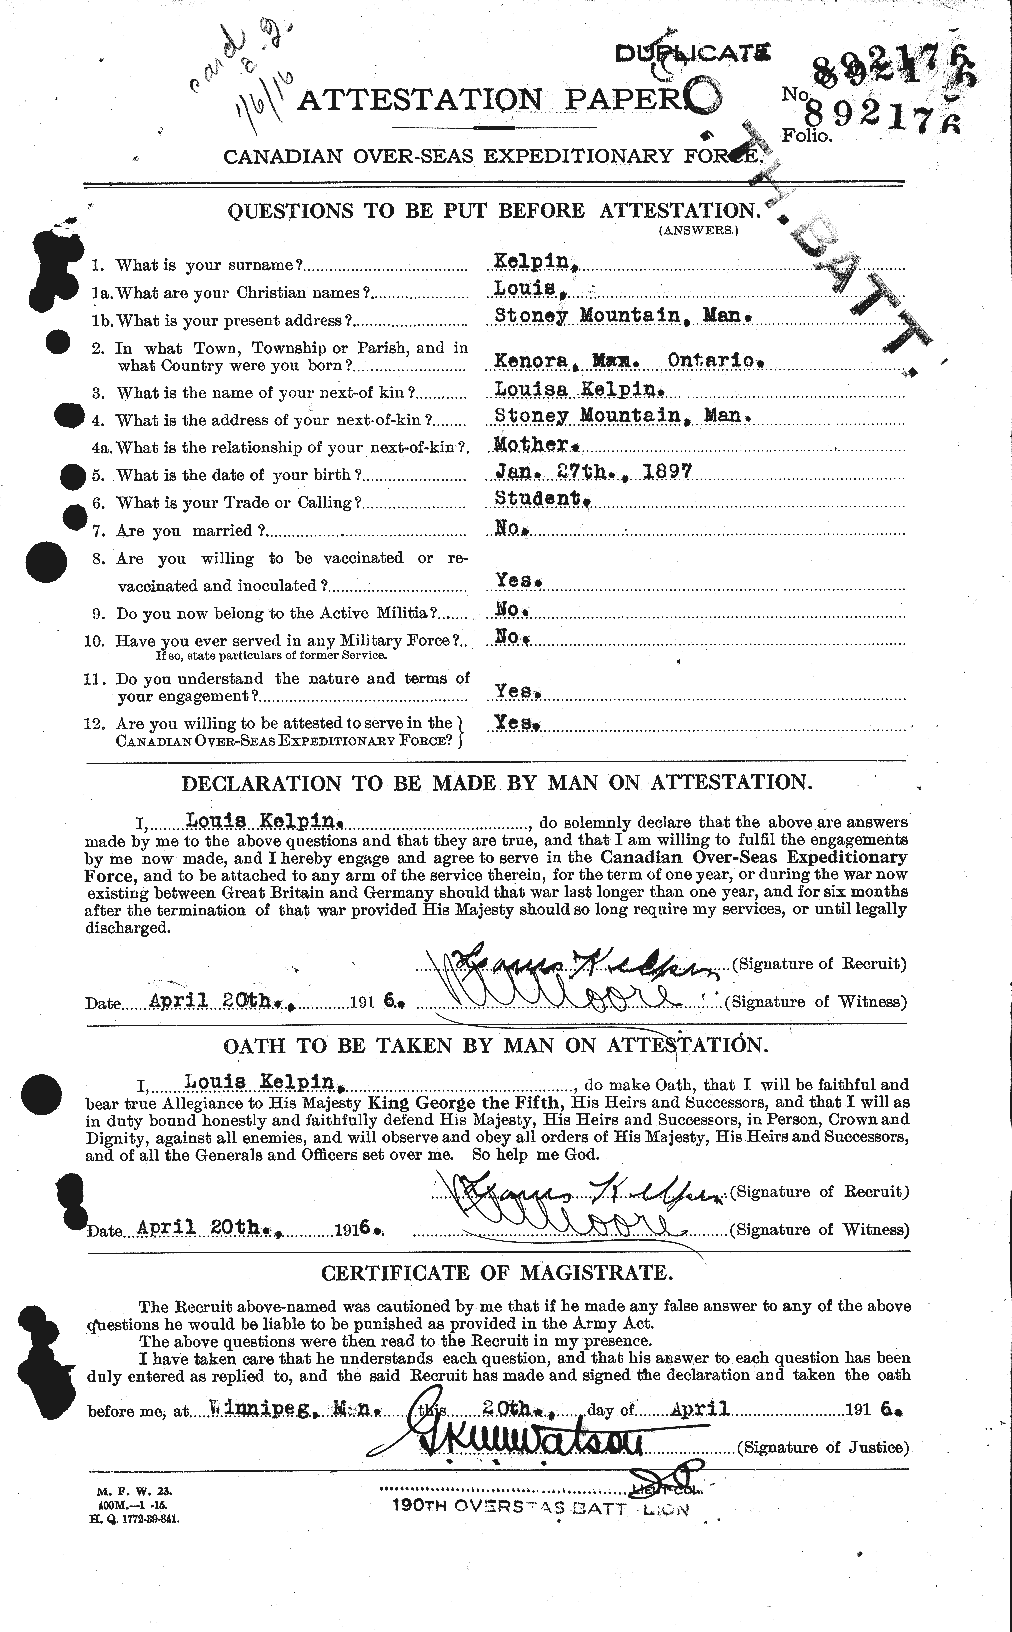 Dossiers du Personnel de la Première Guerre mondiale - CEC 429904a